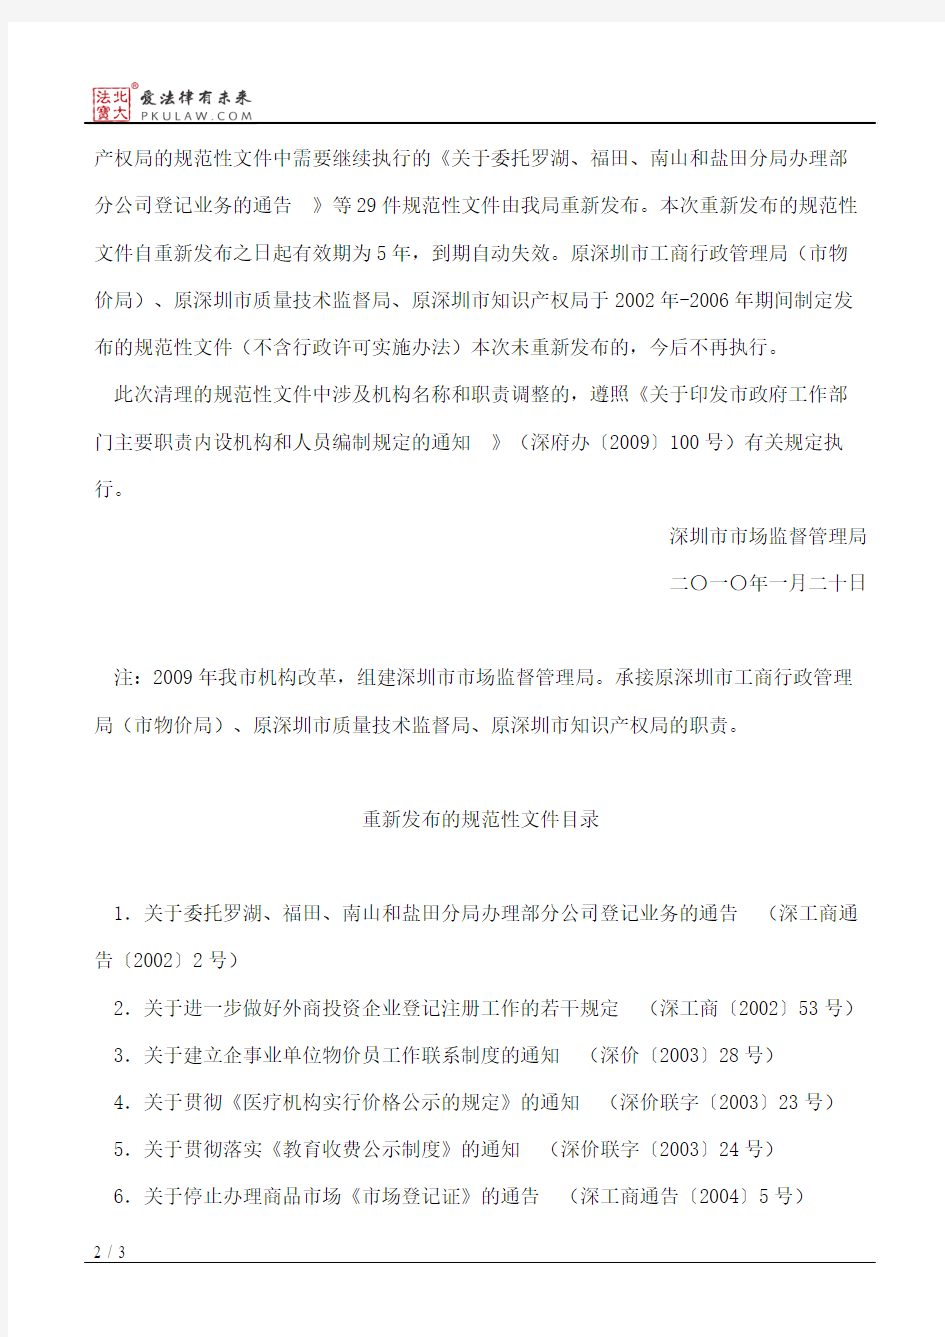 深圳市工商行政管理局关于印发深圳市市场食品索证索票办法的通知